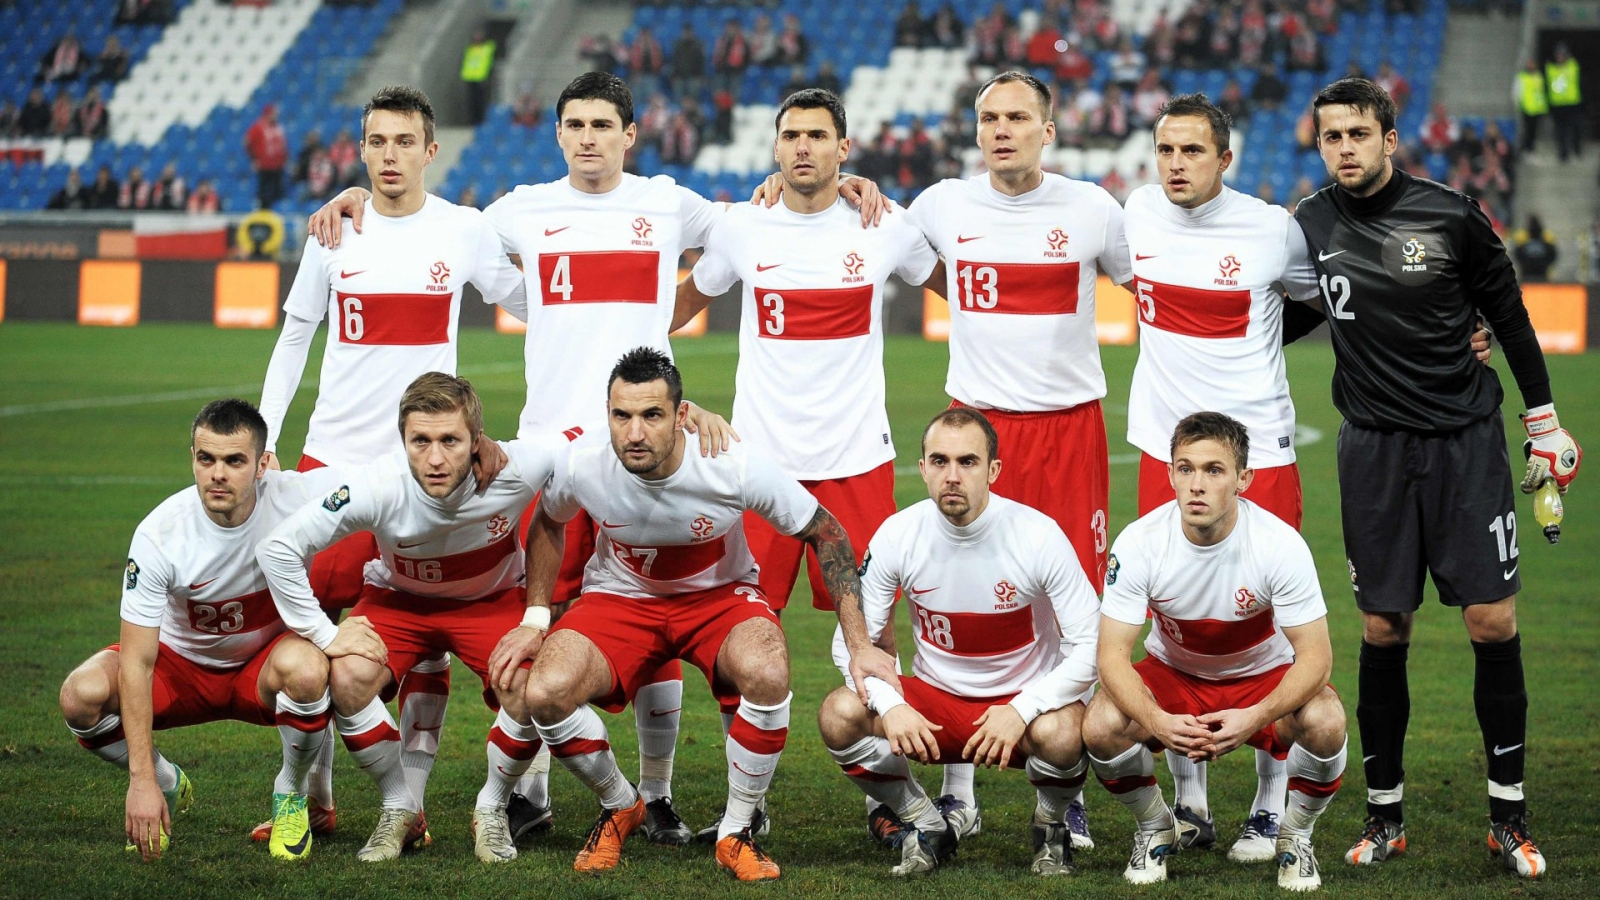 Polska National Team for 1600 x 900 HDTV resolution